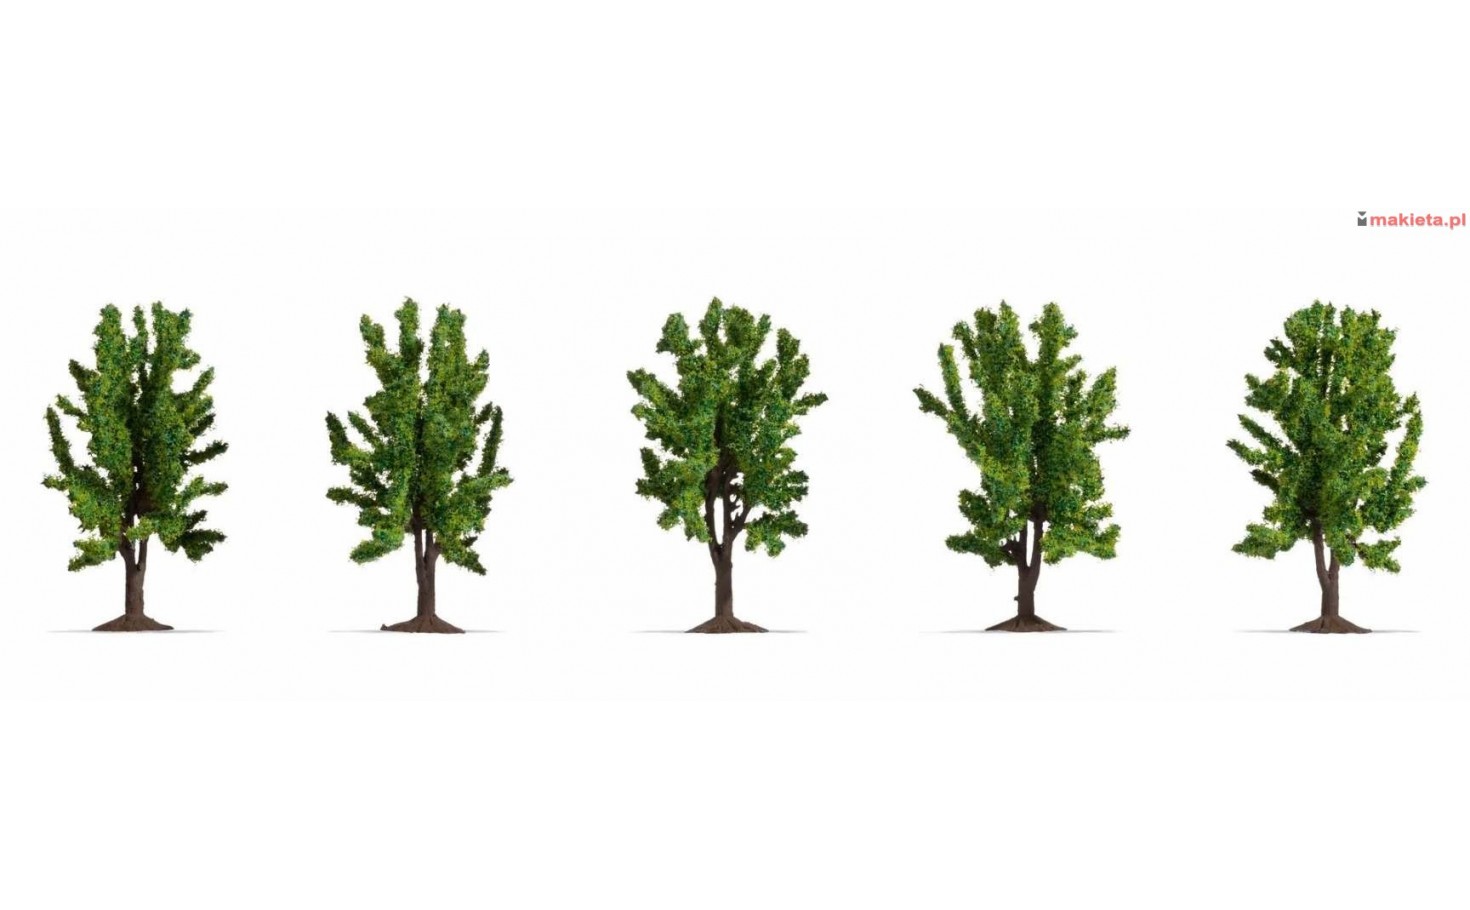 NOCH 25620. Zestaw drzew liściastych, 5 sztuk, wys. ~8 cm, skala H0-TT-N